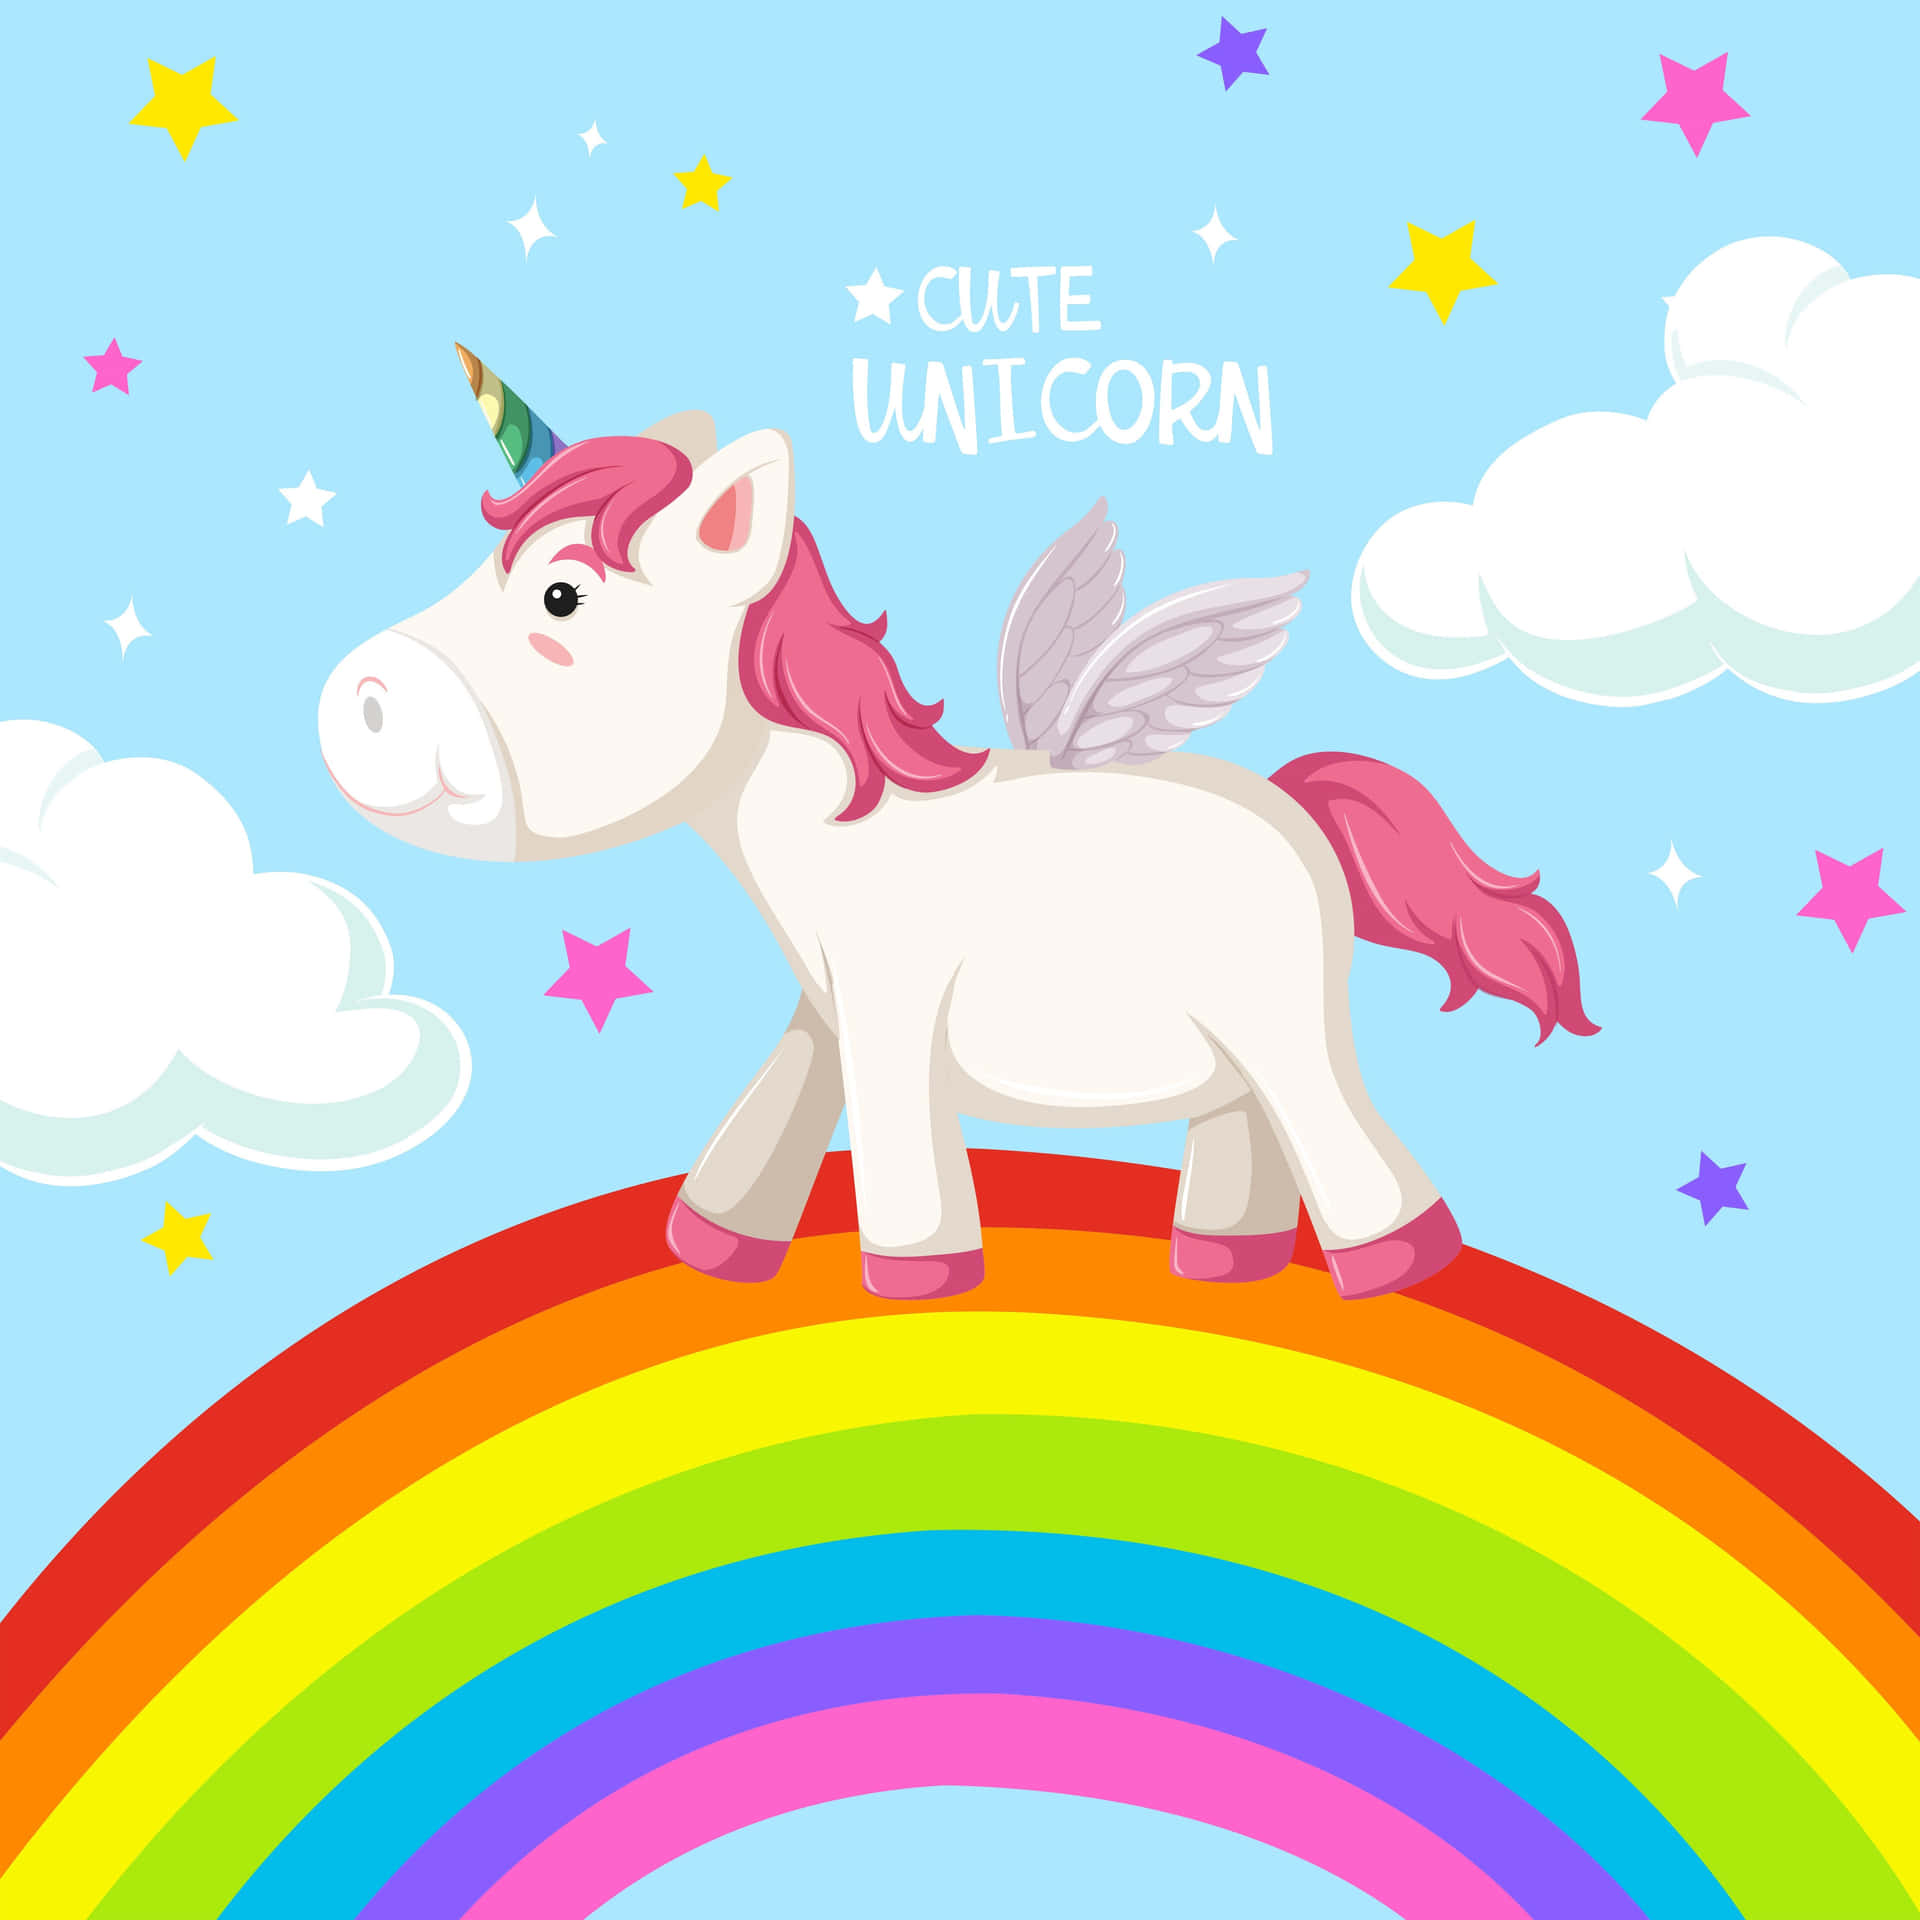 Rainbow unicorn sparkles in the dreamy sky